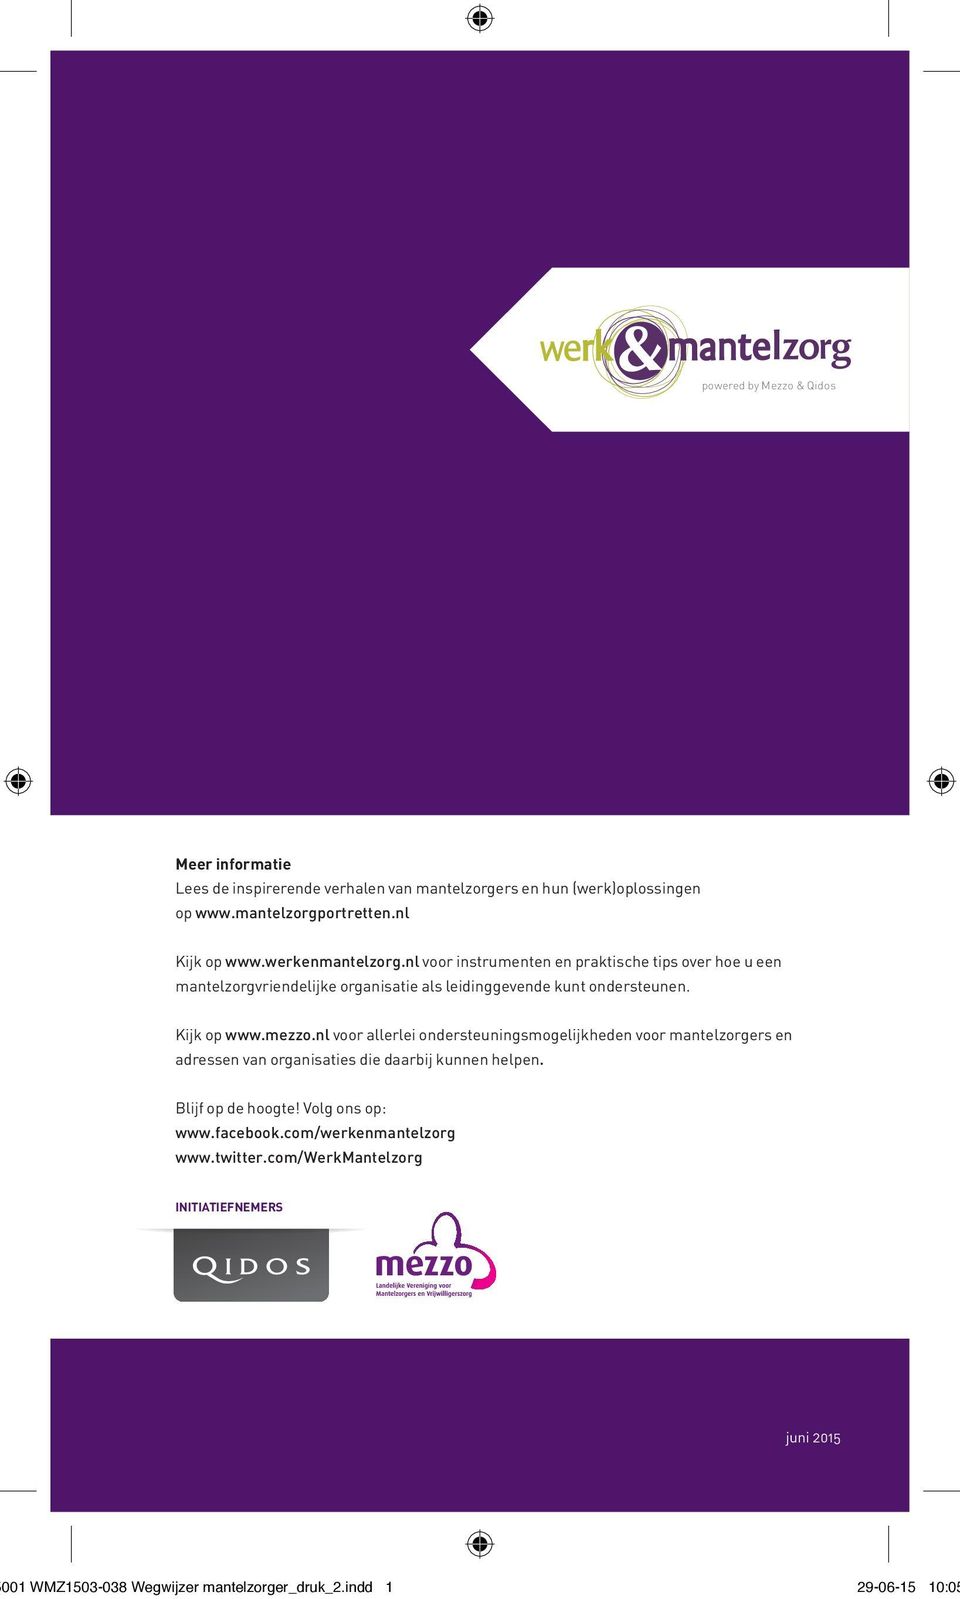 mezzo.nl voor allerlei ondersteuningsmogelijkheden voor mantelzorgers en adressen van organisaties die daarbij kunnen helpen. Blijf op de hoogte!